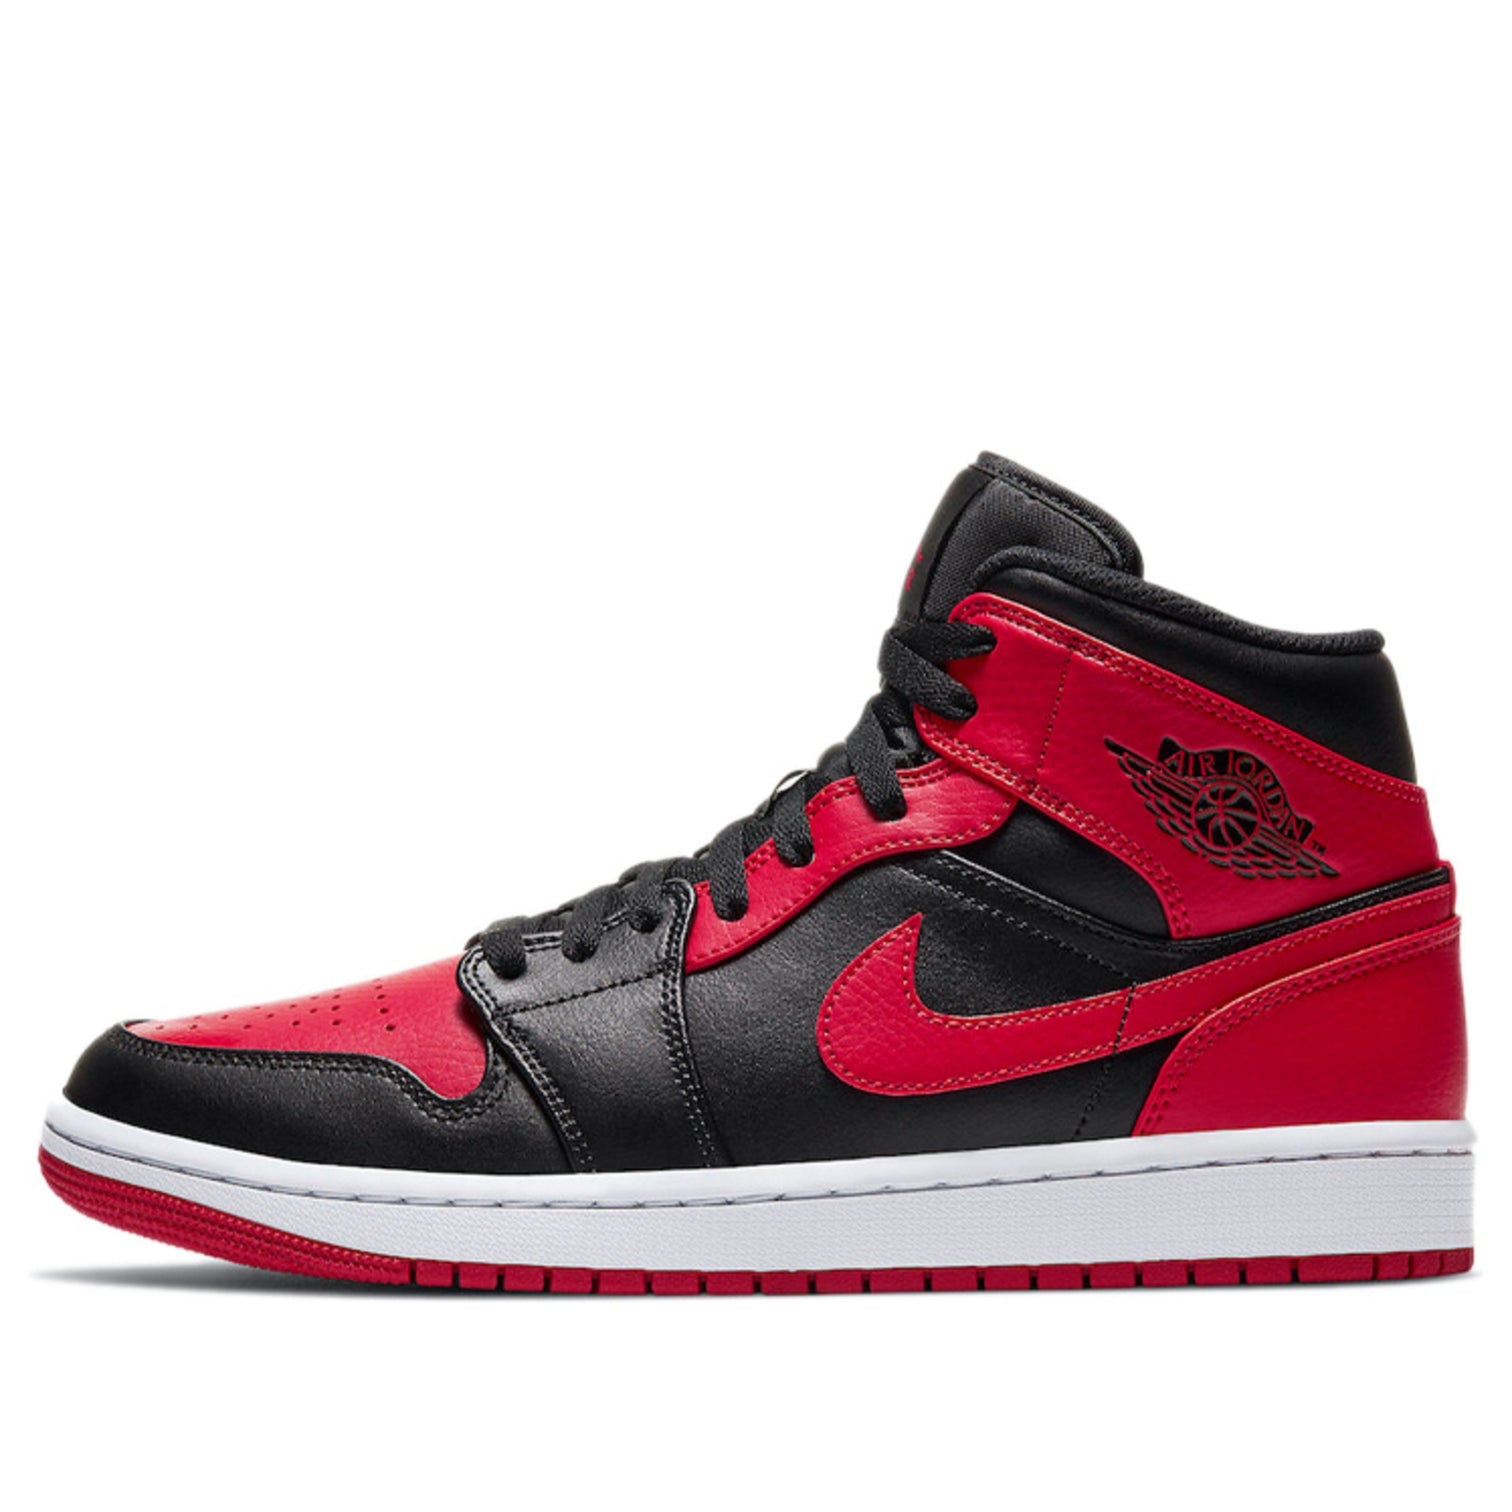 Nike Air Jordan 1 Mid Banned MENS ANKLE RED BLACK SNEAKERS